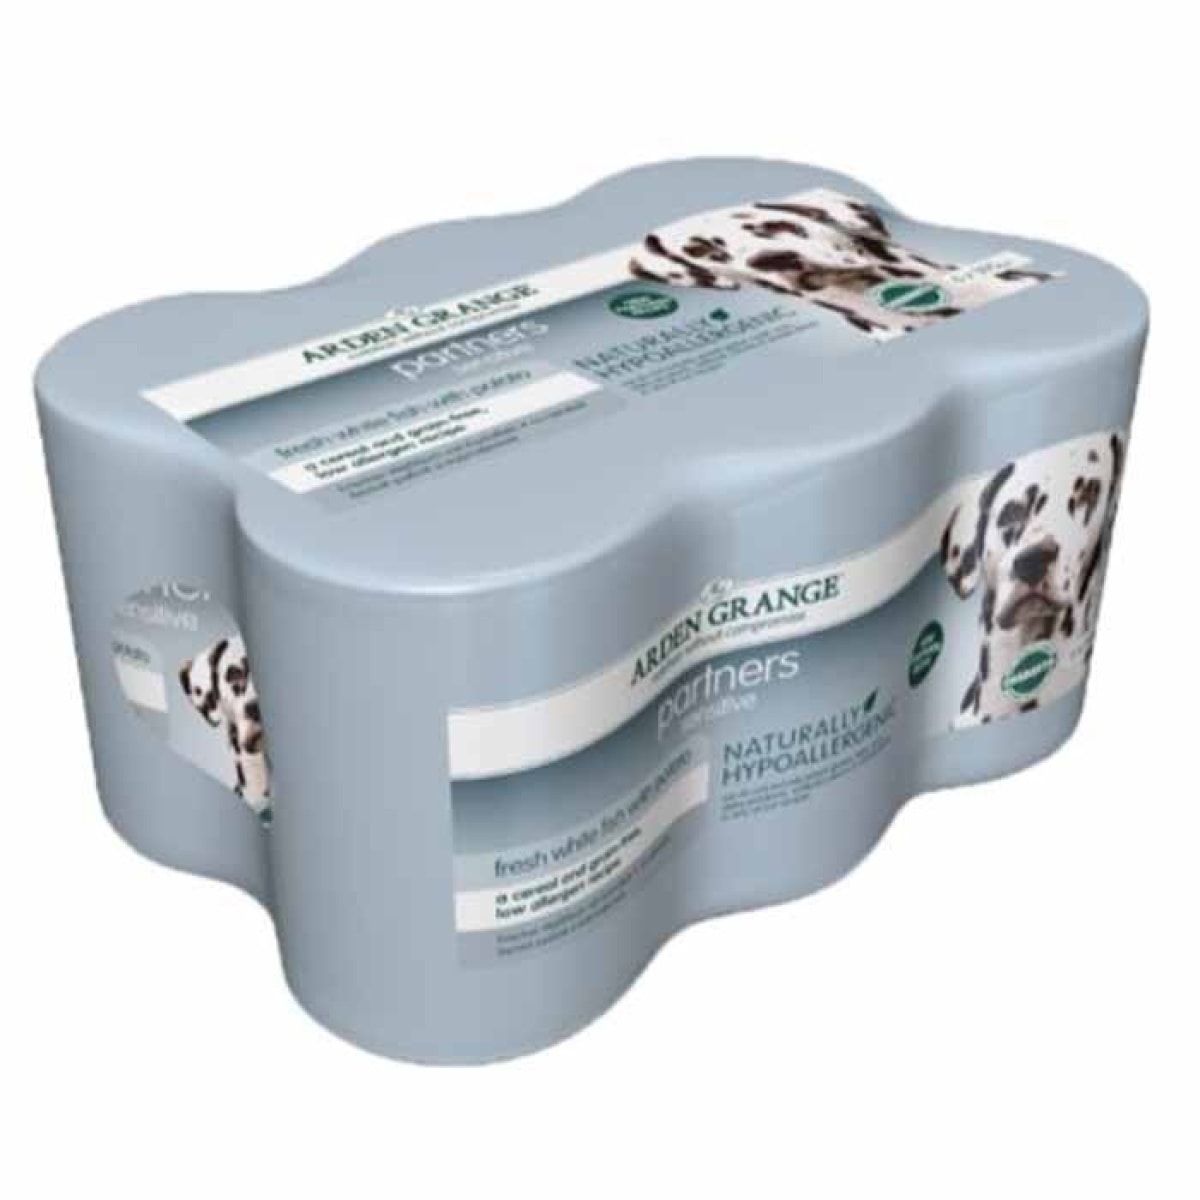 Arden Grange Partners Sensitive – Pawfect Supplies Ltd Product Image